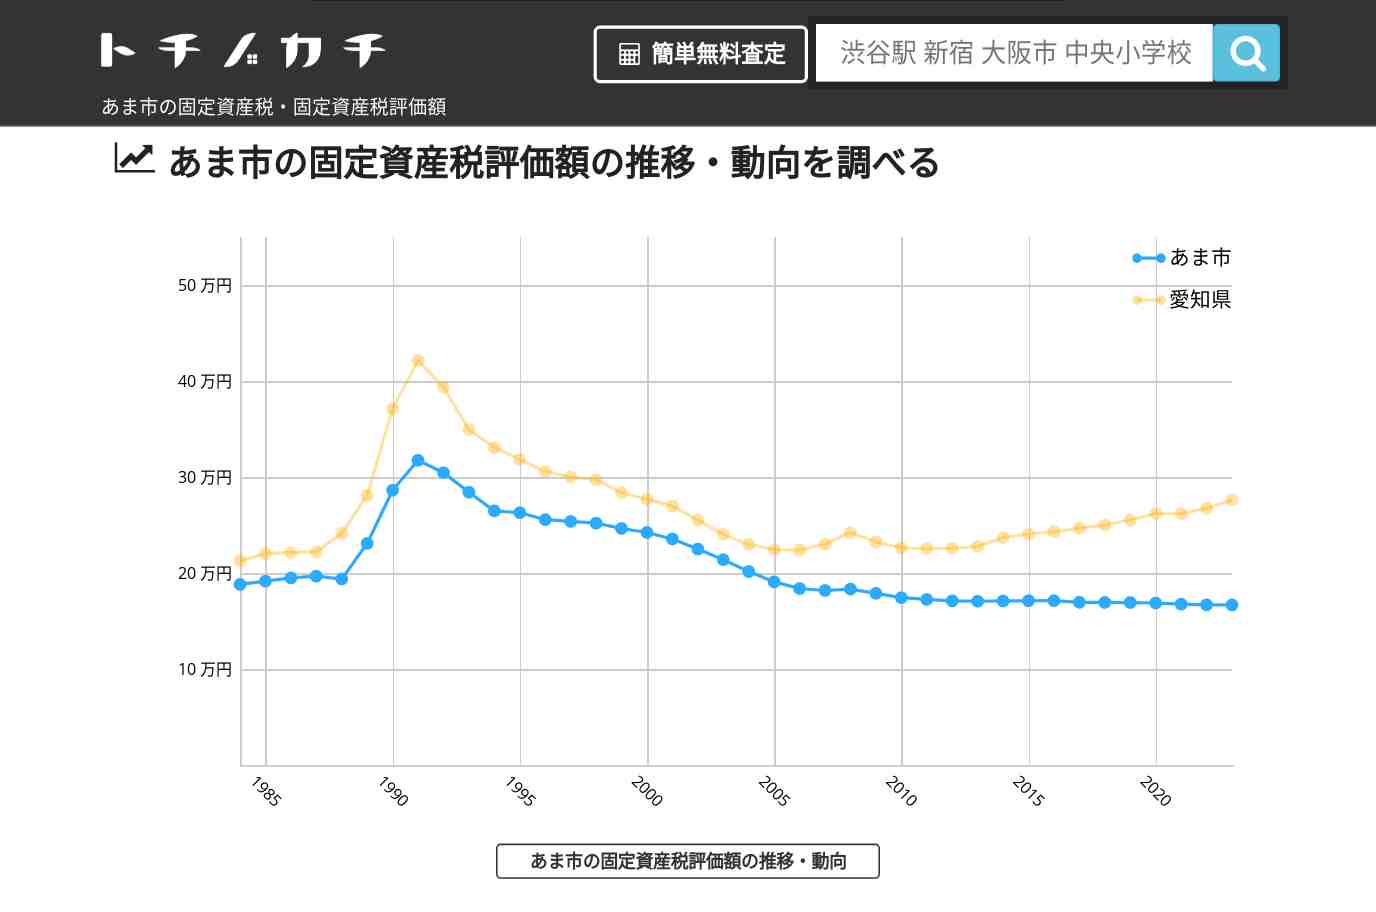 秋竹小学校(愛知県 あま市)周辺の固定資産税・固定資産税評価額 | トチノカチ